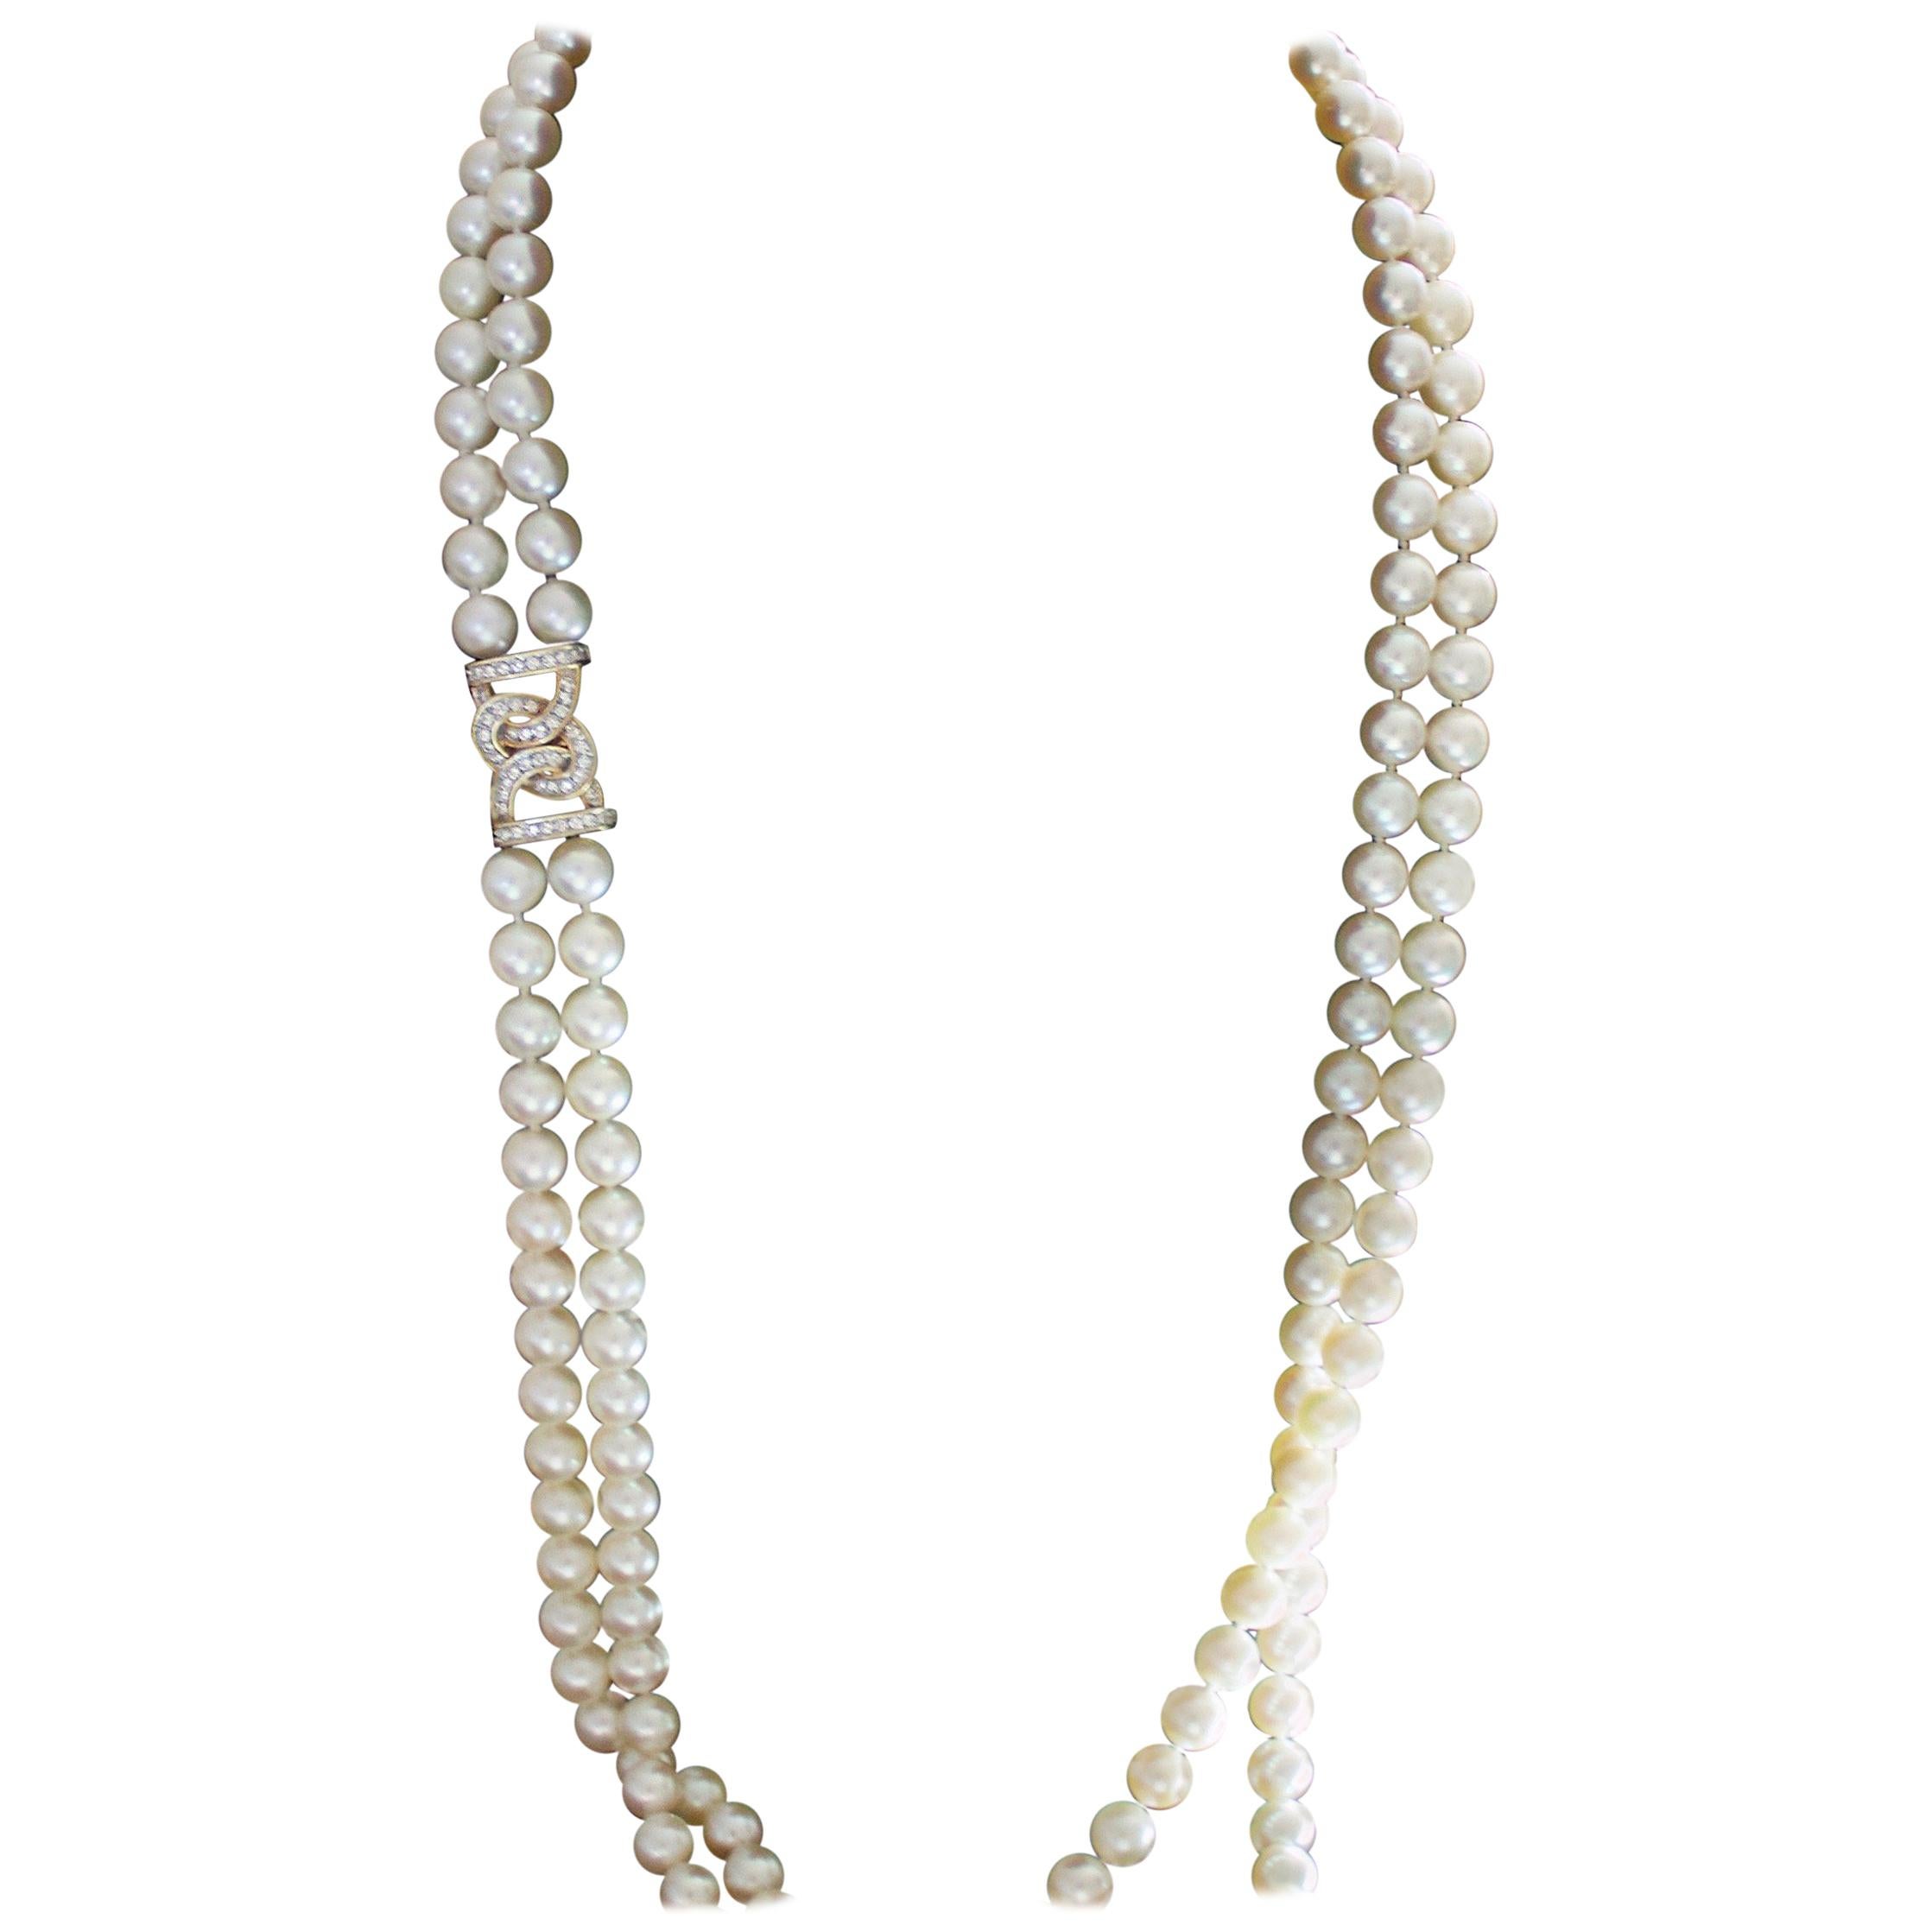 Halskette aus Gelbgold mit Perlen und Diamanten in doppelter Opernlänge